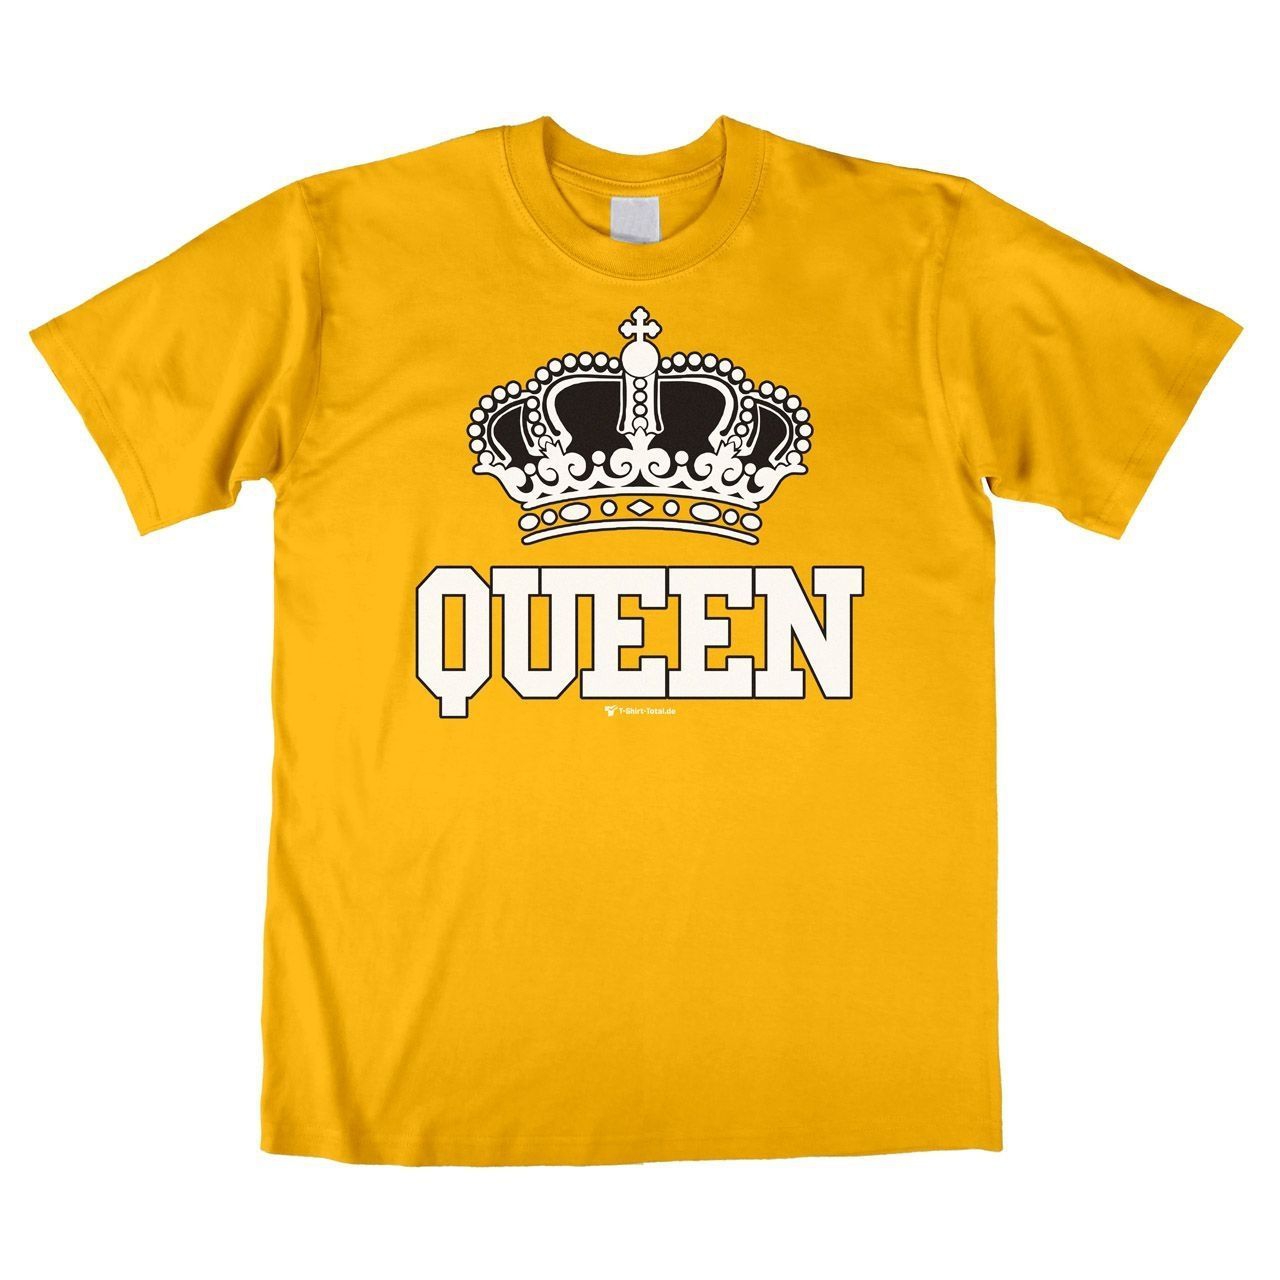 Queen Unisex T-Shirt gelb Medium